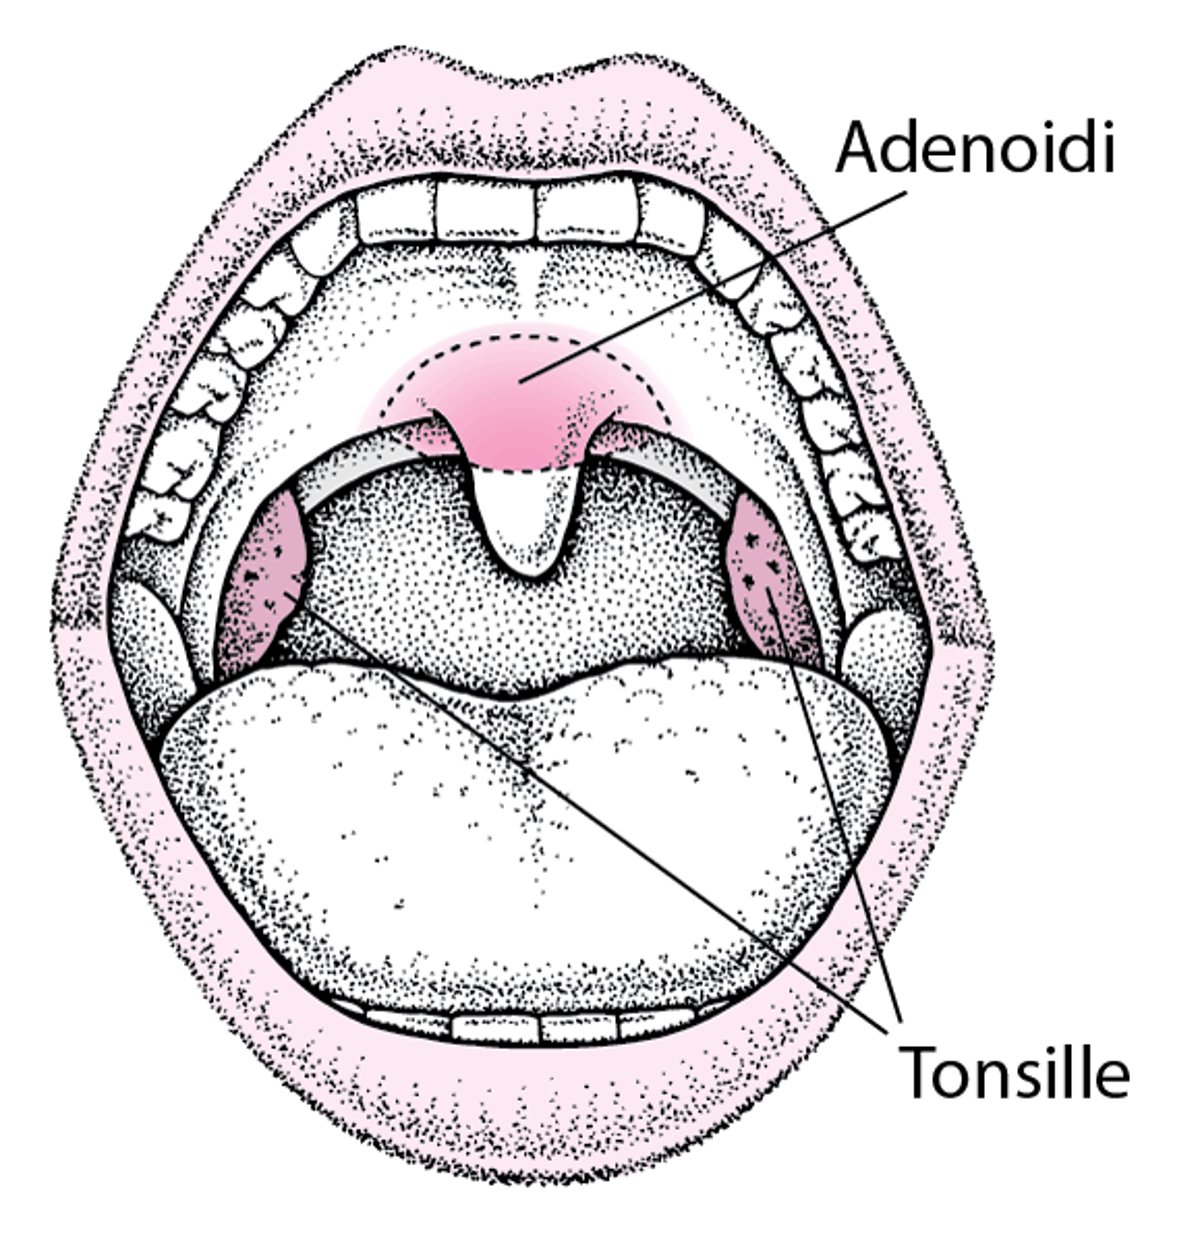 Localizzazione di tonsille e adenoidi